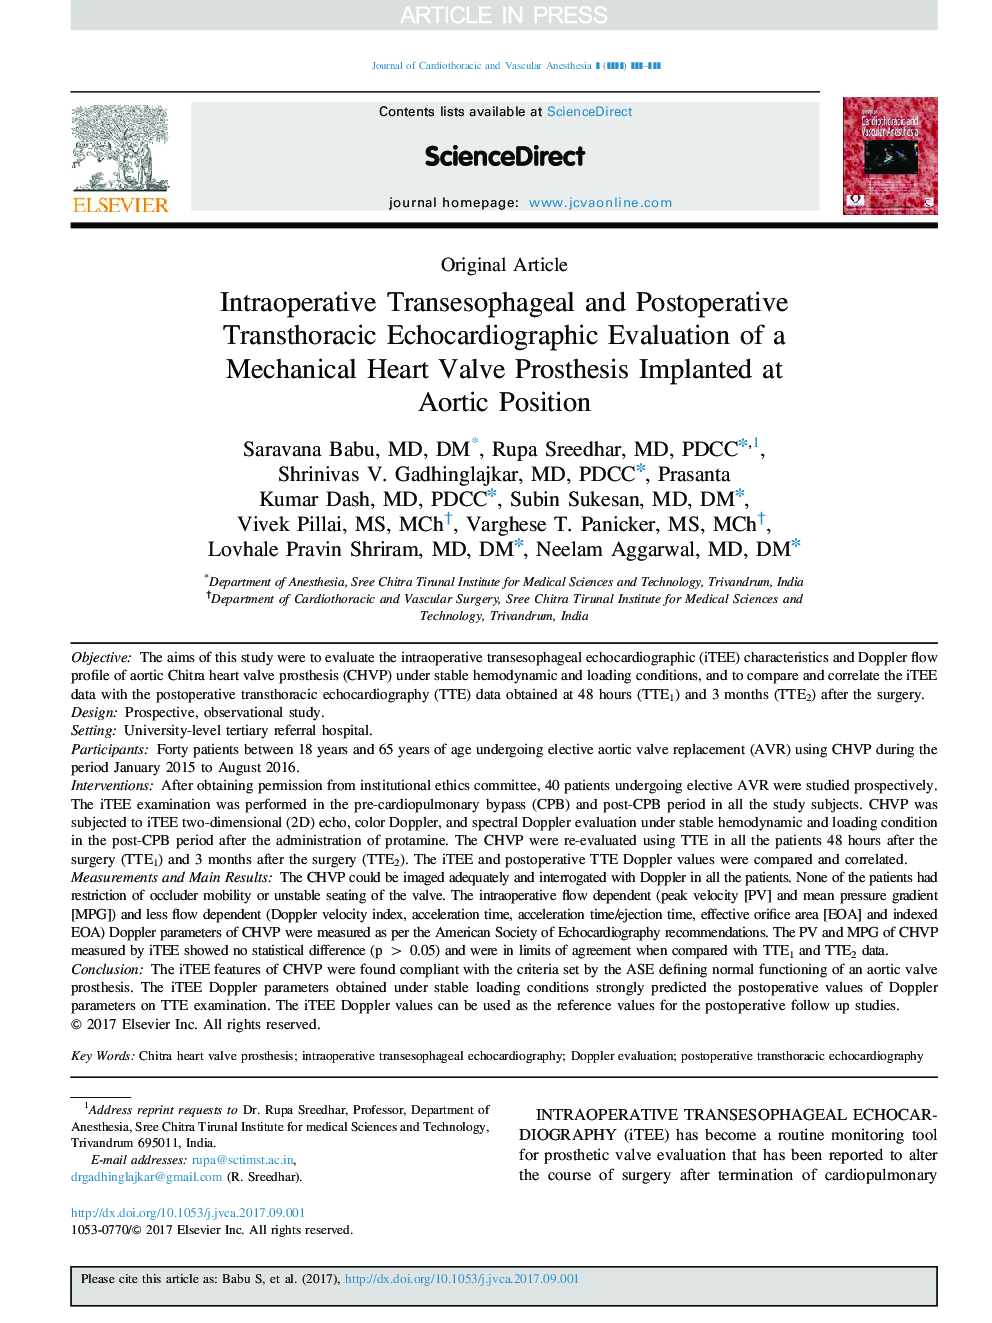 ارزیابی اکوکاردیوگرام ترانساستراحیکال ترانسوراژی داخل تراپی و بعد از عمل یک پروتز دریچه قلب مکانیکی در موقعیت آئورت ایمپلنت 